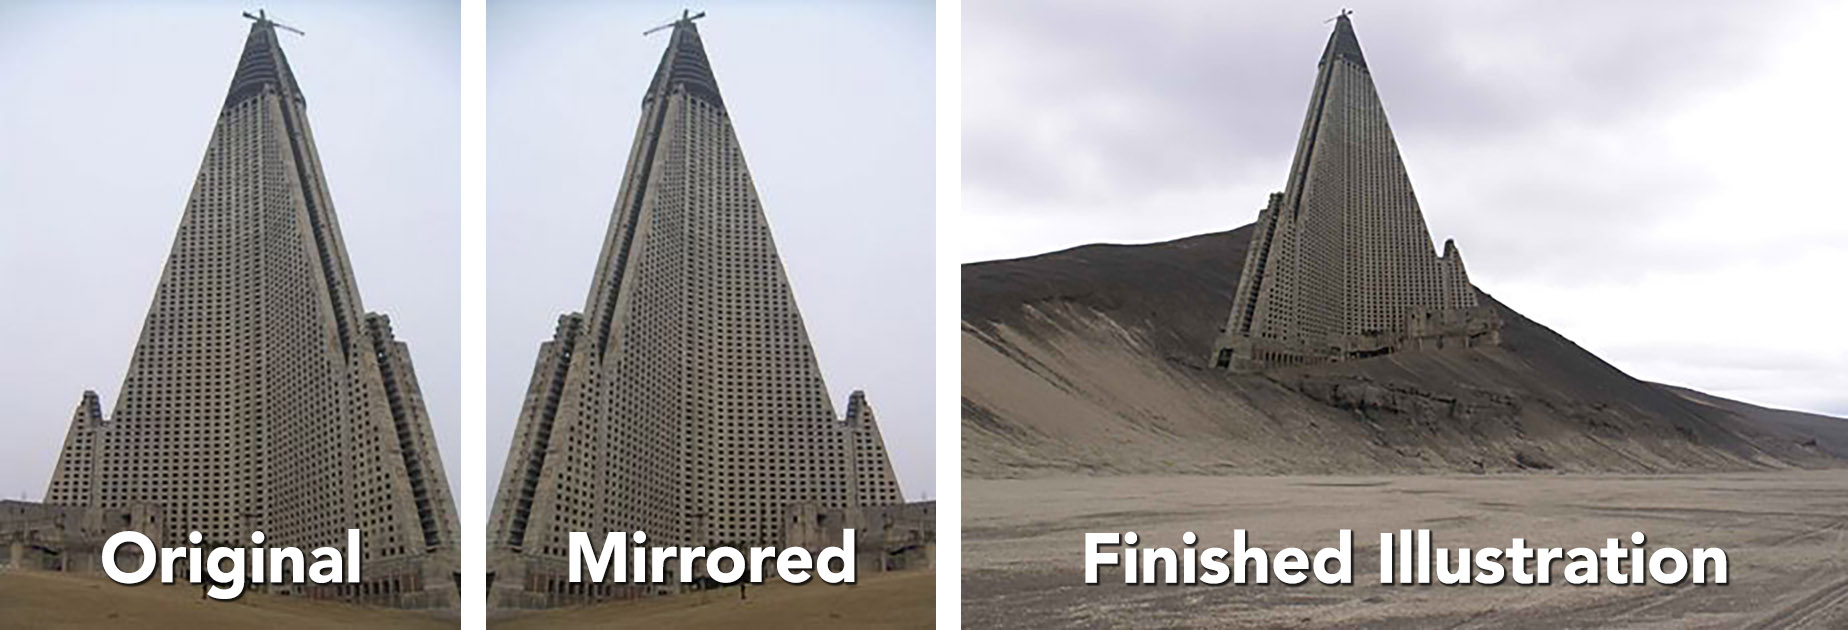 La imagen del Hotel Ryugyong con el edificio de la pirámide en una duna o montículo de arena es originalmente de una ilustración de Nicolas Moulin.